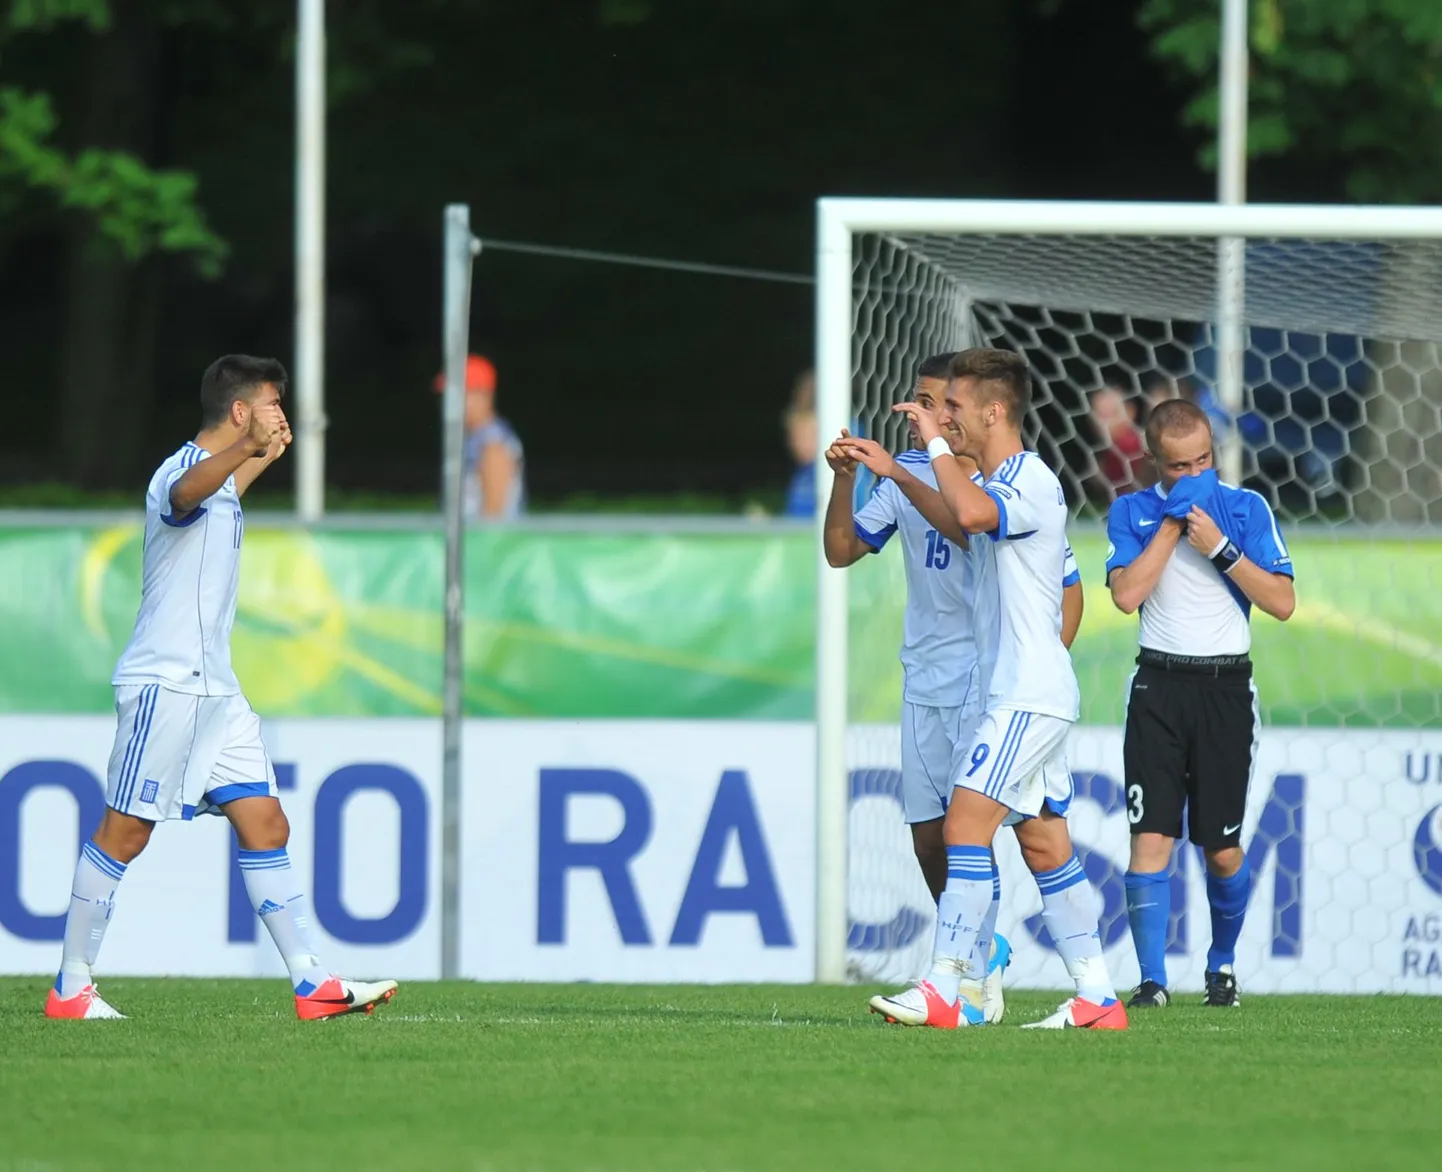 Kreeka U19 koondis tagas pääsu poolfinaali.